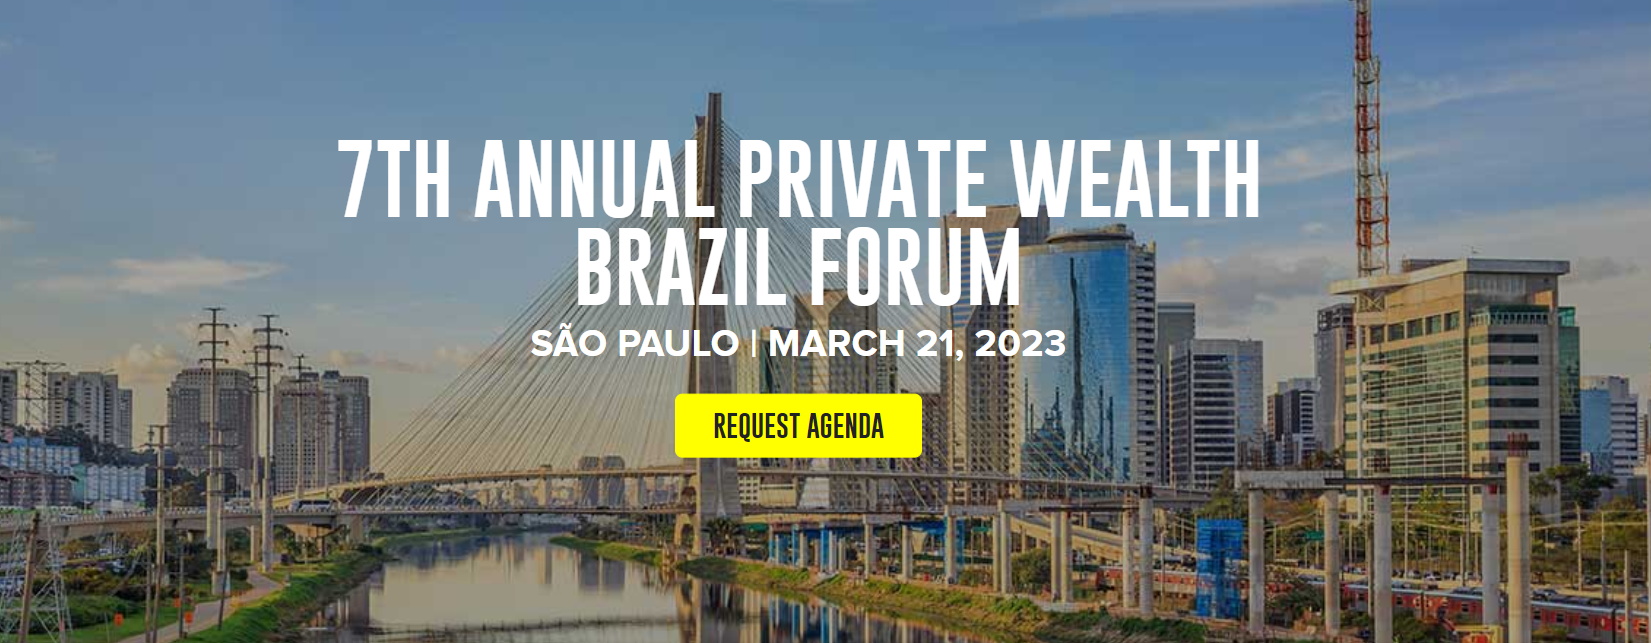 7th Annual Private Wealth Brazil Forum